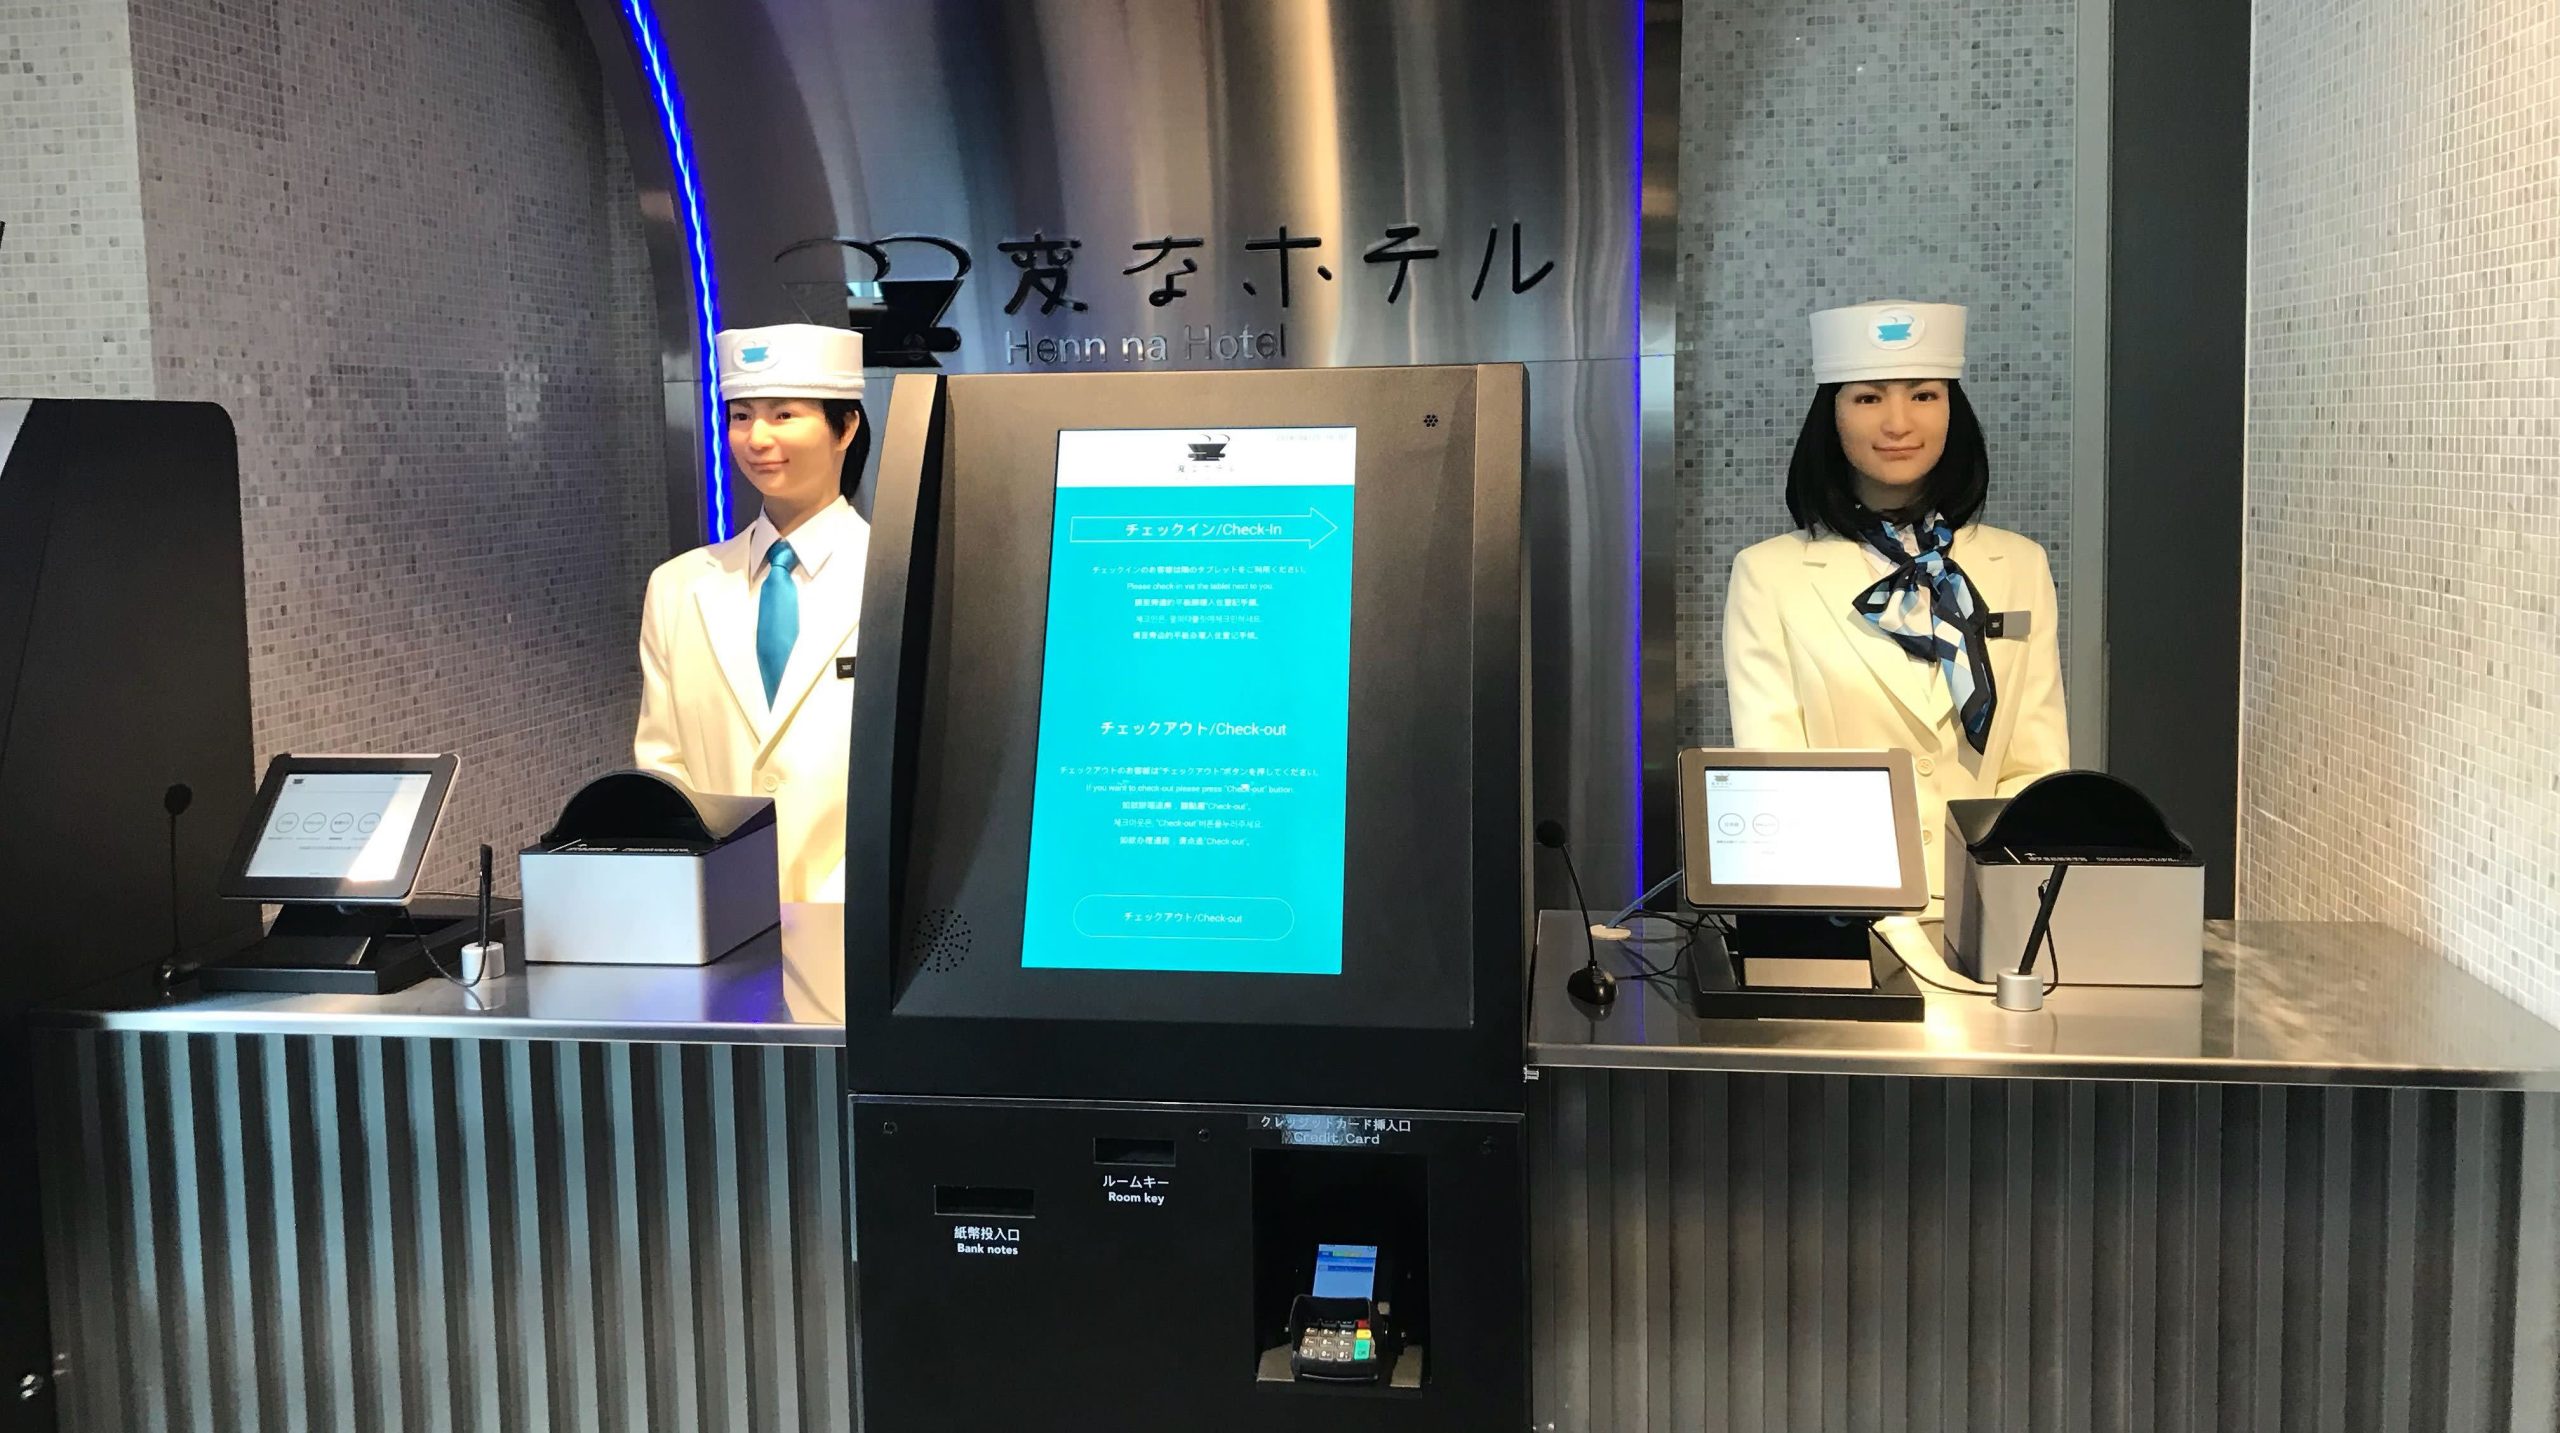 Ρομποτικό ξενοδοχείο… απολύει ρομπότ και προσλαμβάνει ανθρώπους (φωτο)